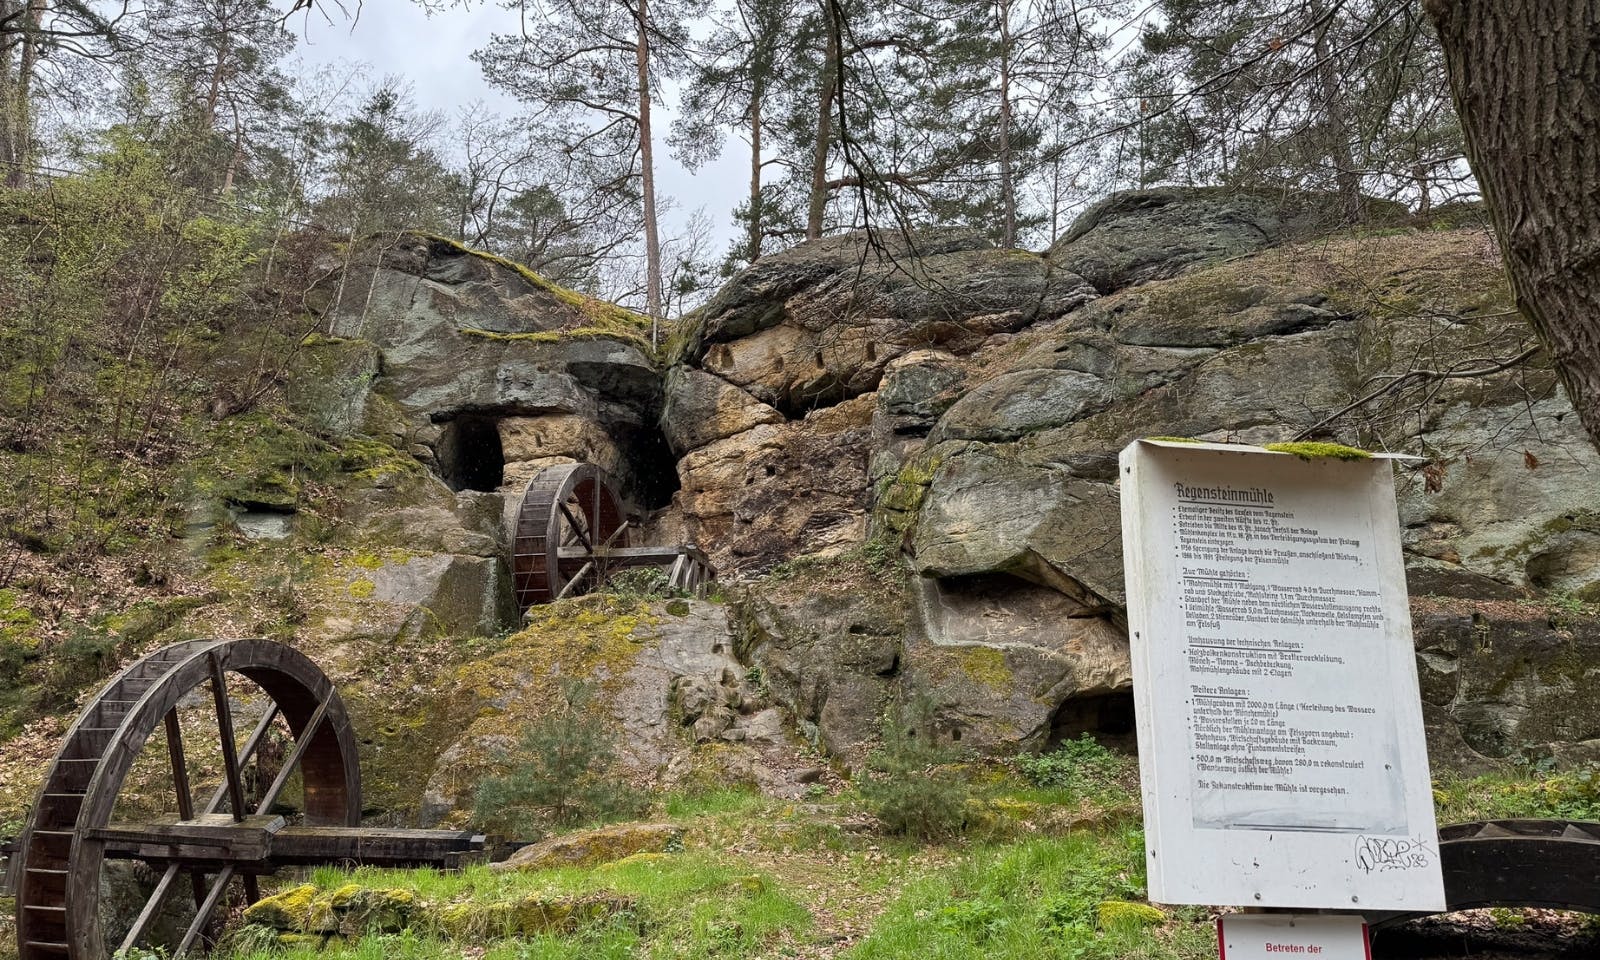 Die Regensteinmühle, Ende des 12. Jahrhunderts erbaut, diente bis Mitte des 15. Jahrhunderts zur Versorgung der Burg Regenstein mit Mehl und Öl. Nach Verfall und Wiederentdeckung 1988 wurden die Mühlenräder rekonstruiert und 2013 erneuert. Die Mühle, zwischen der Burg Regenstein und den Sandsteinhöhlen gelegen, ist heute eine beliebte Stempelstelle der Harzer Wandernadel und ein Zeugnis mittelalterlicher Ingenieurskunst, eingebettet in die malerische Landschaft des Harzes.